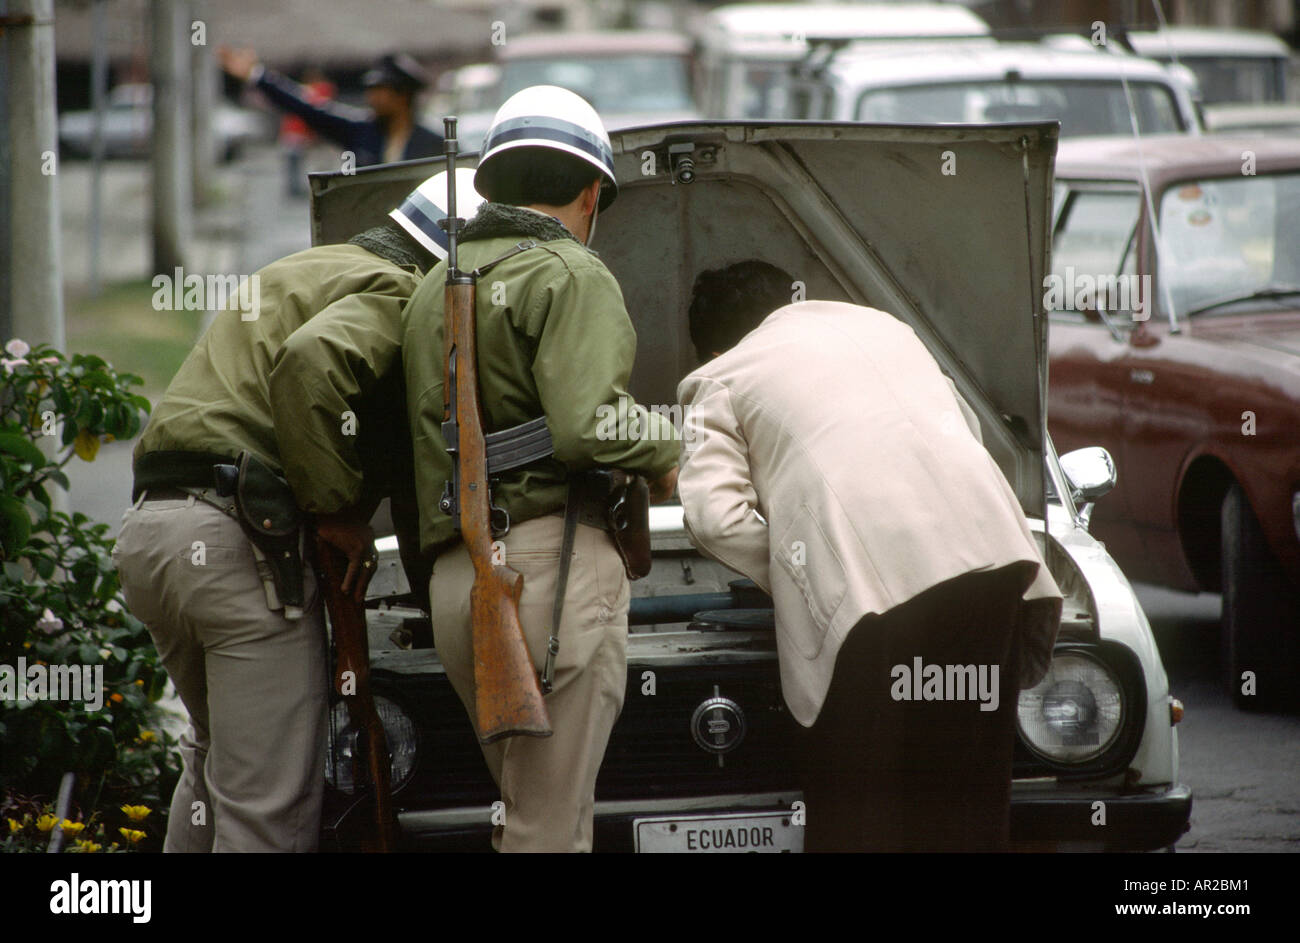 Ecuador Quito security armed police examining car Stock Photo